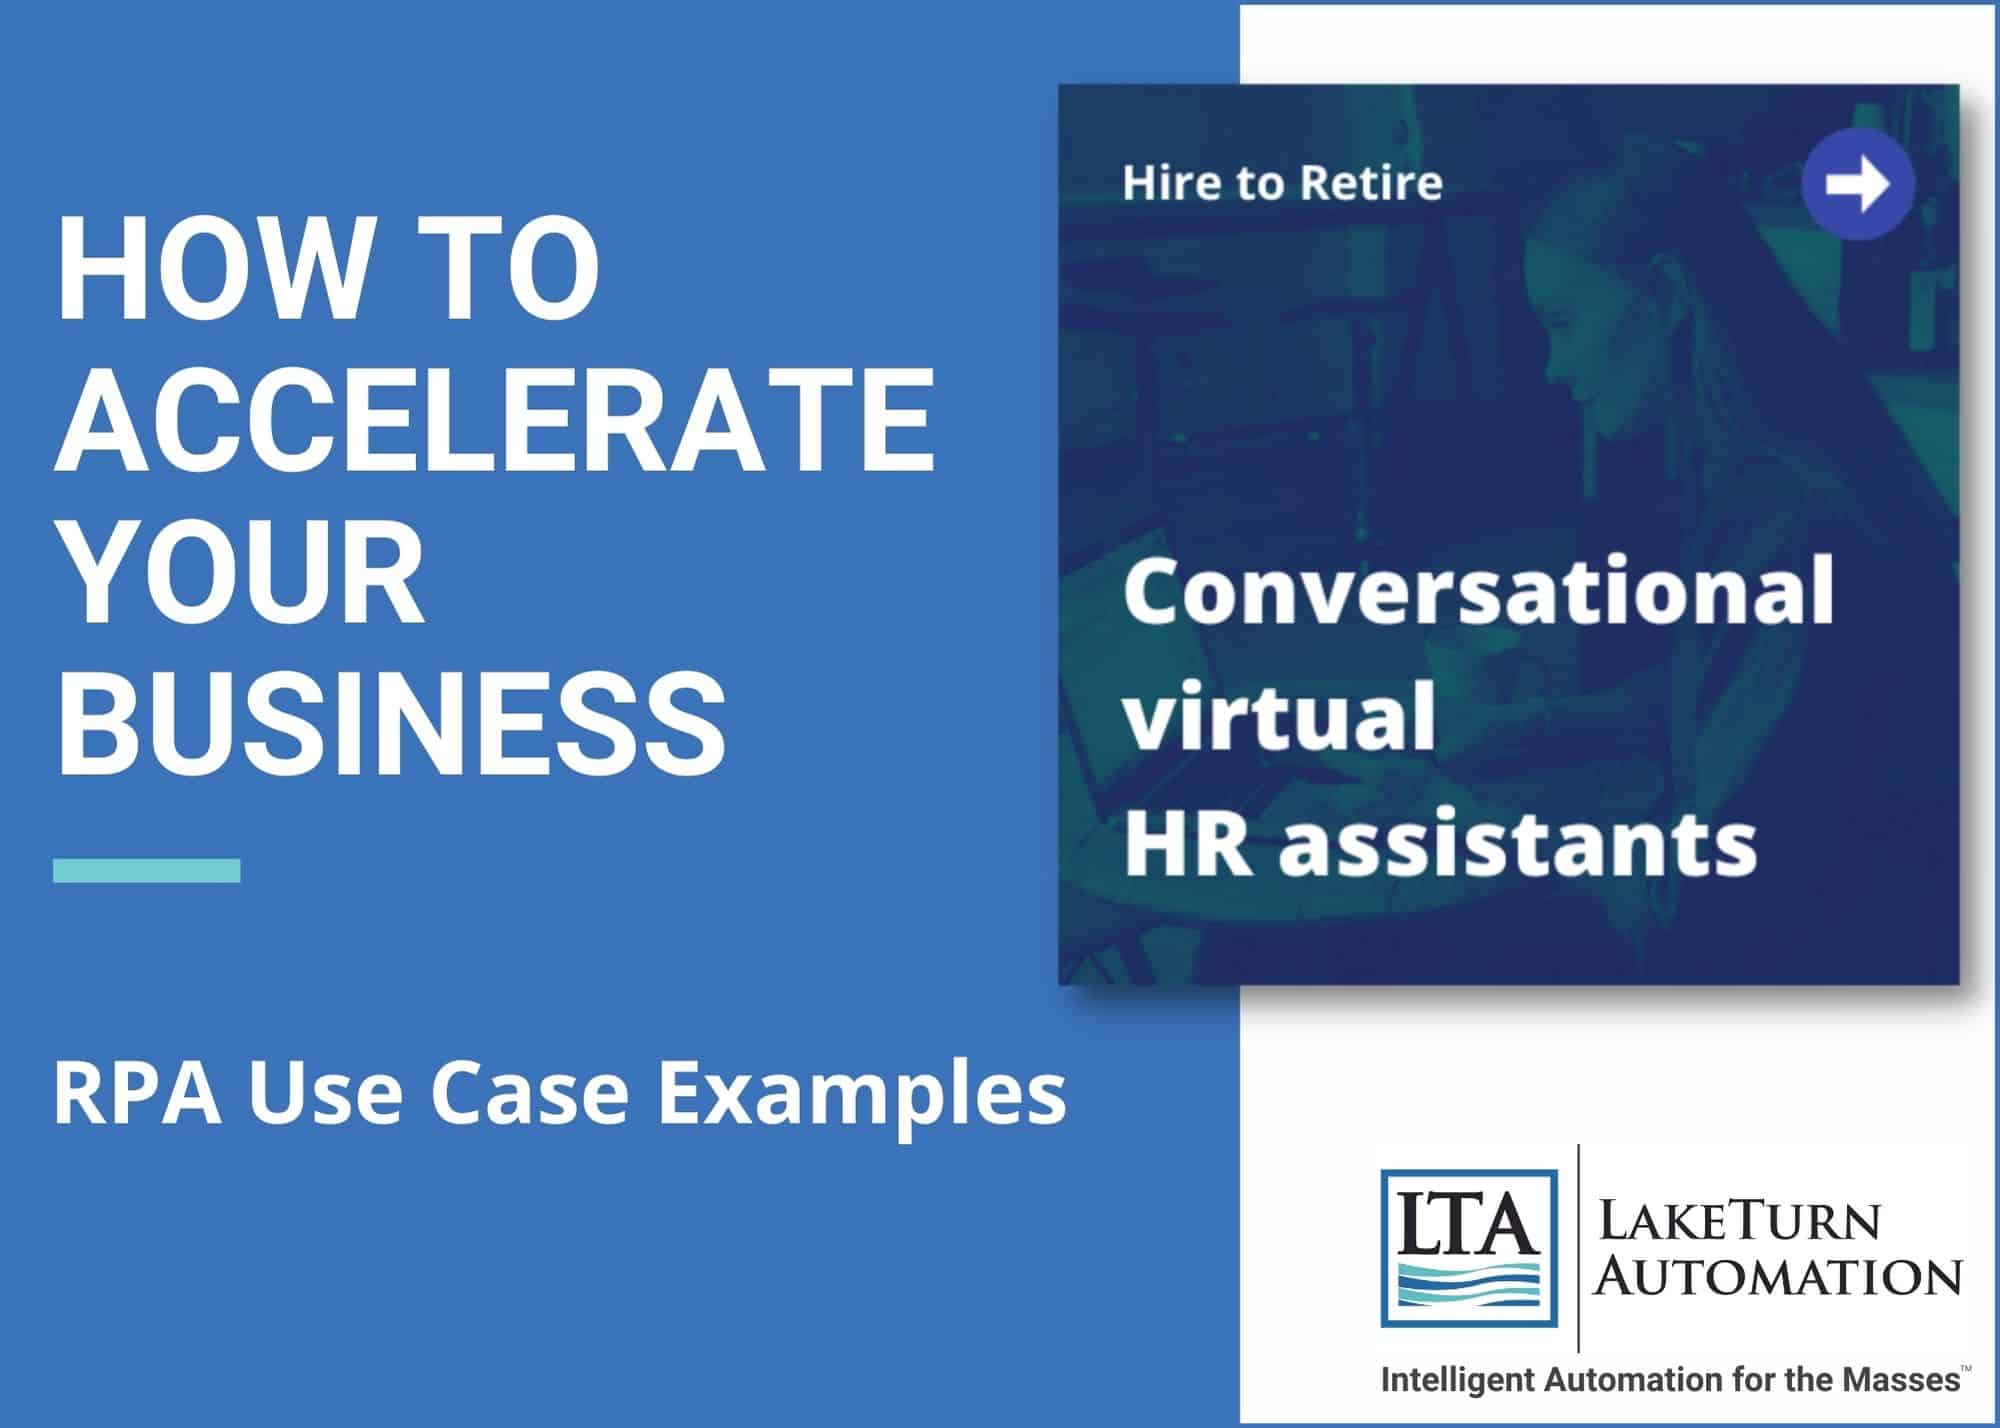 Conversational Virtual HR Assistants